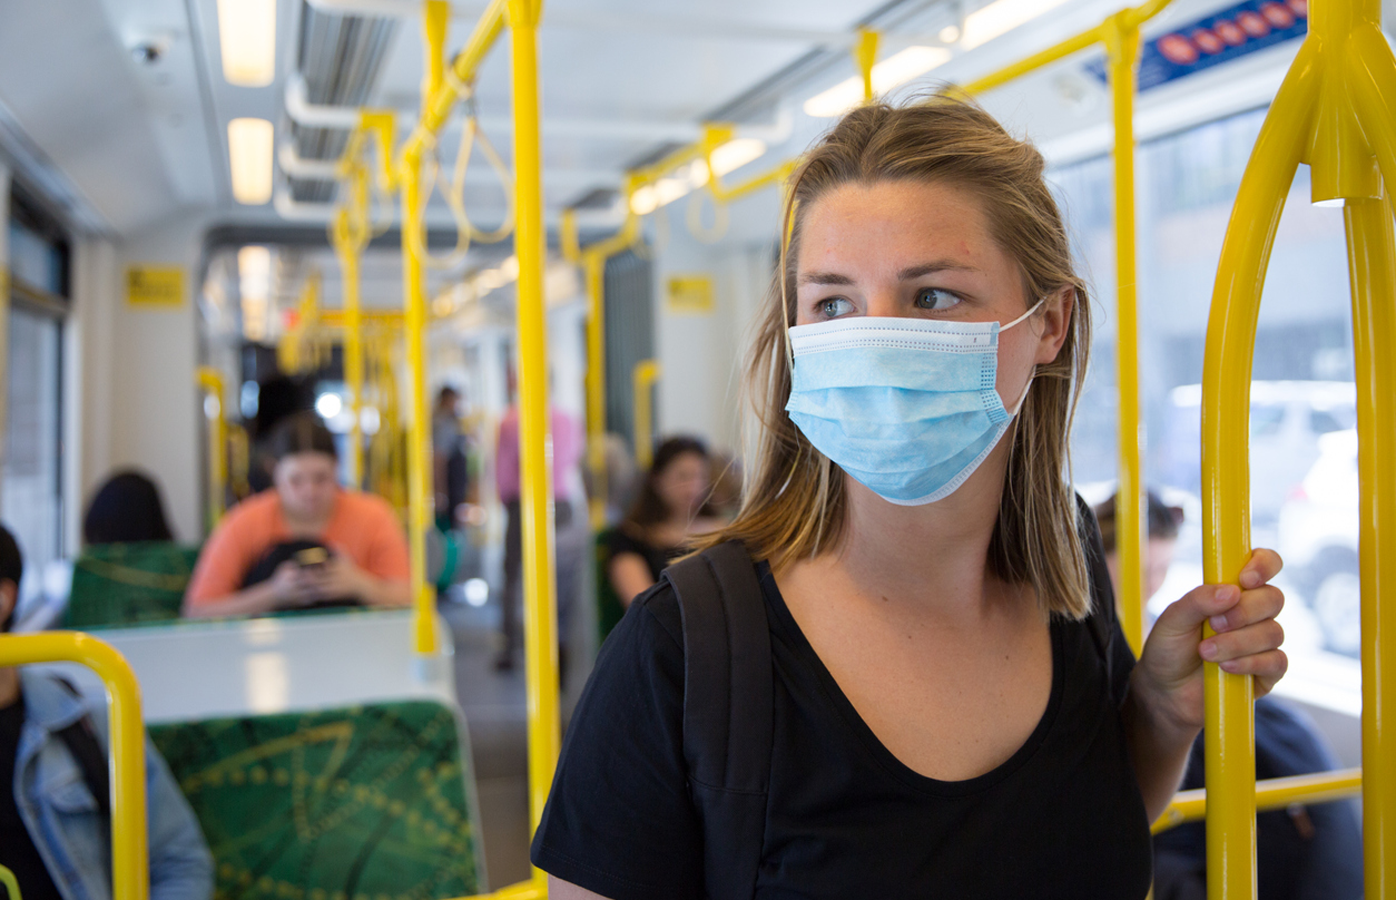 Woman wears face mask on public transport